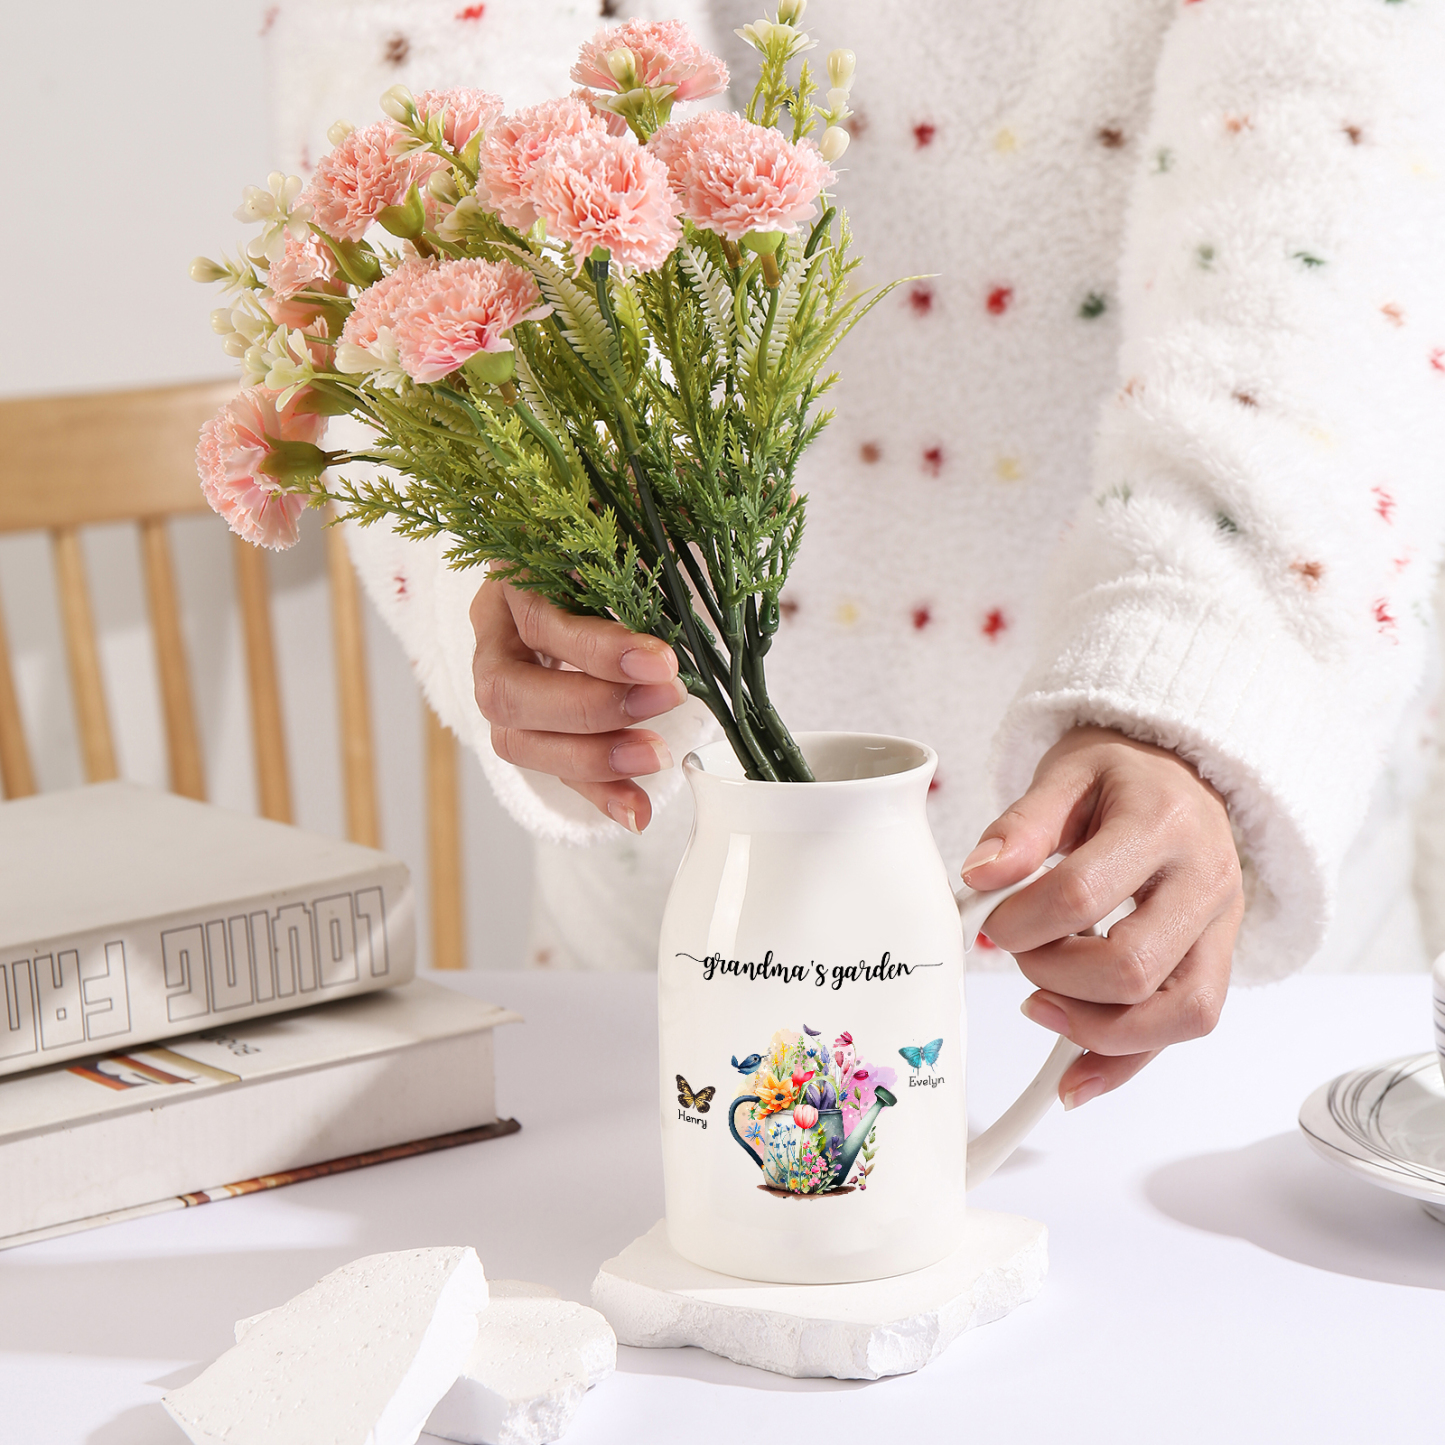 2 Names - Personalized Name "Grandma's Garden" Ceramic Vase as a Gift for Grandma